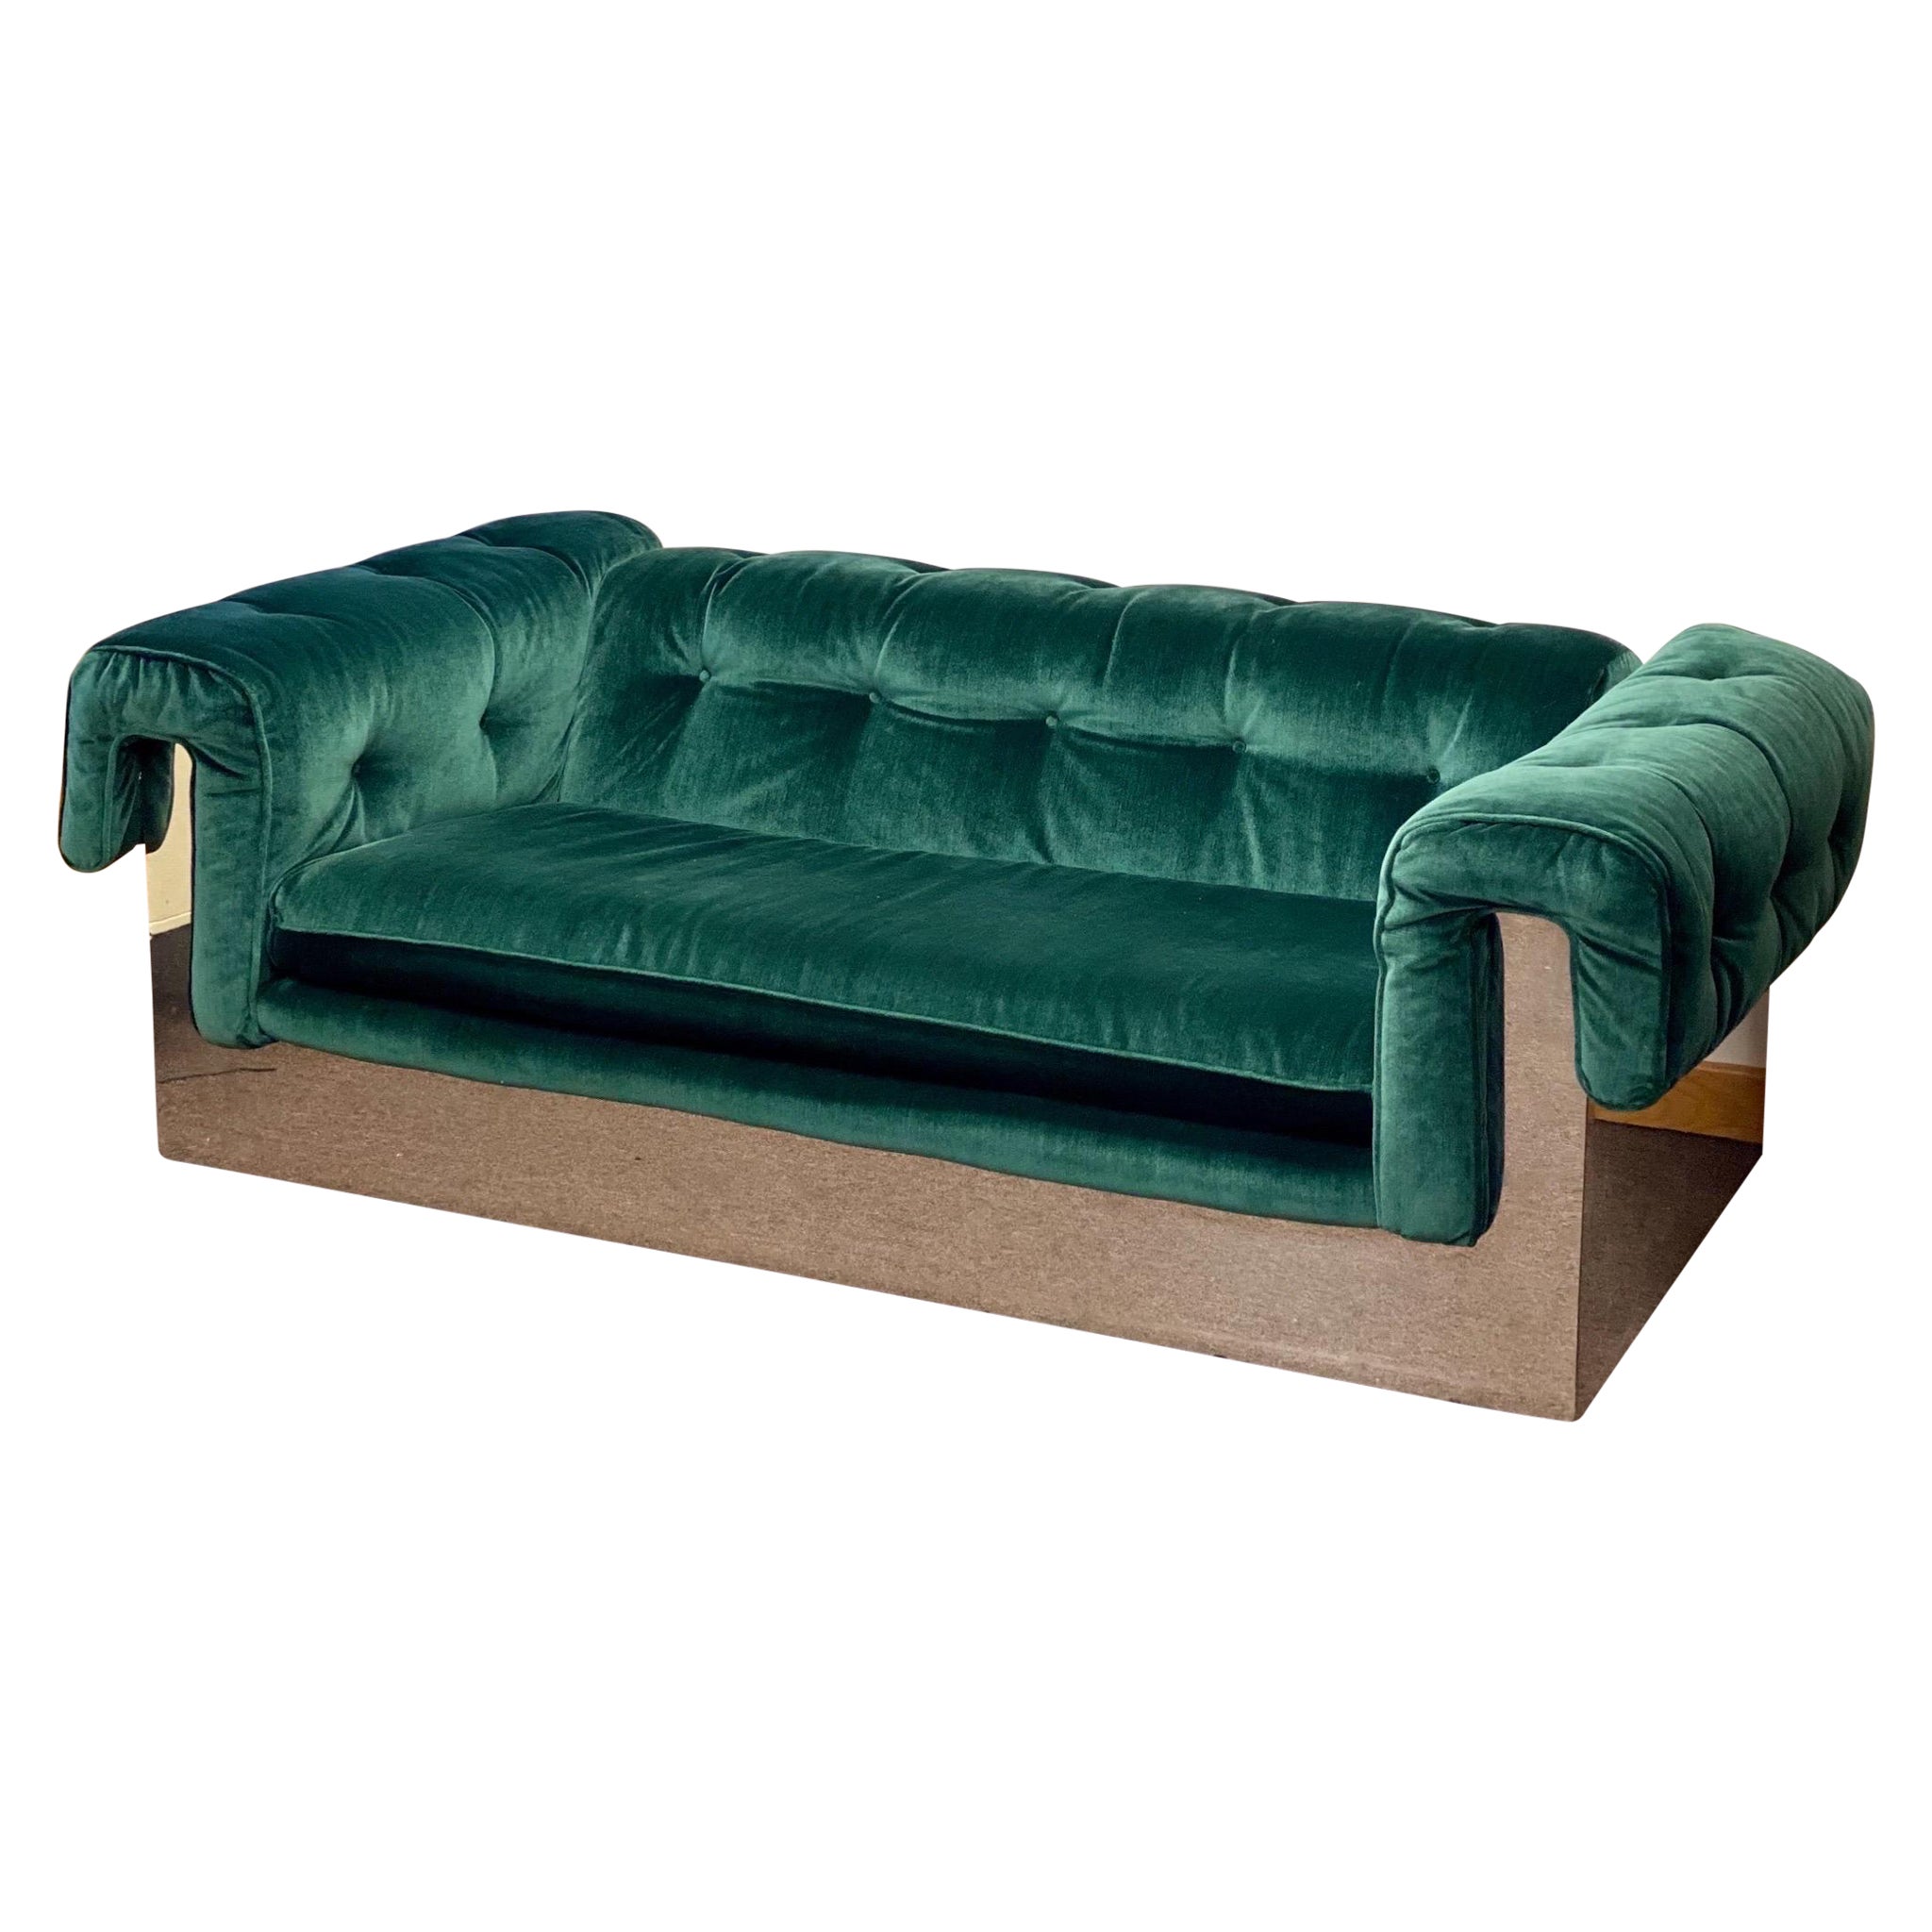 1970s Milo Baughman for Thayer Coggin Tufted Green Velvet & Chrome Wrapped Sofa For Sale